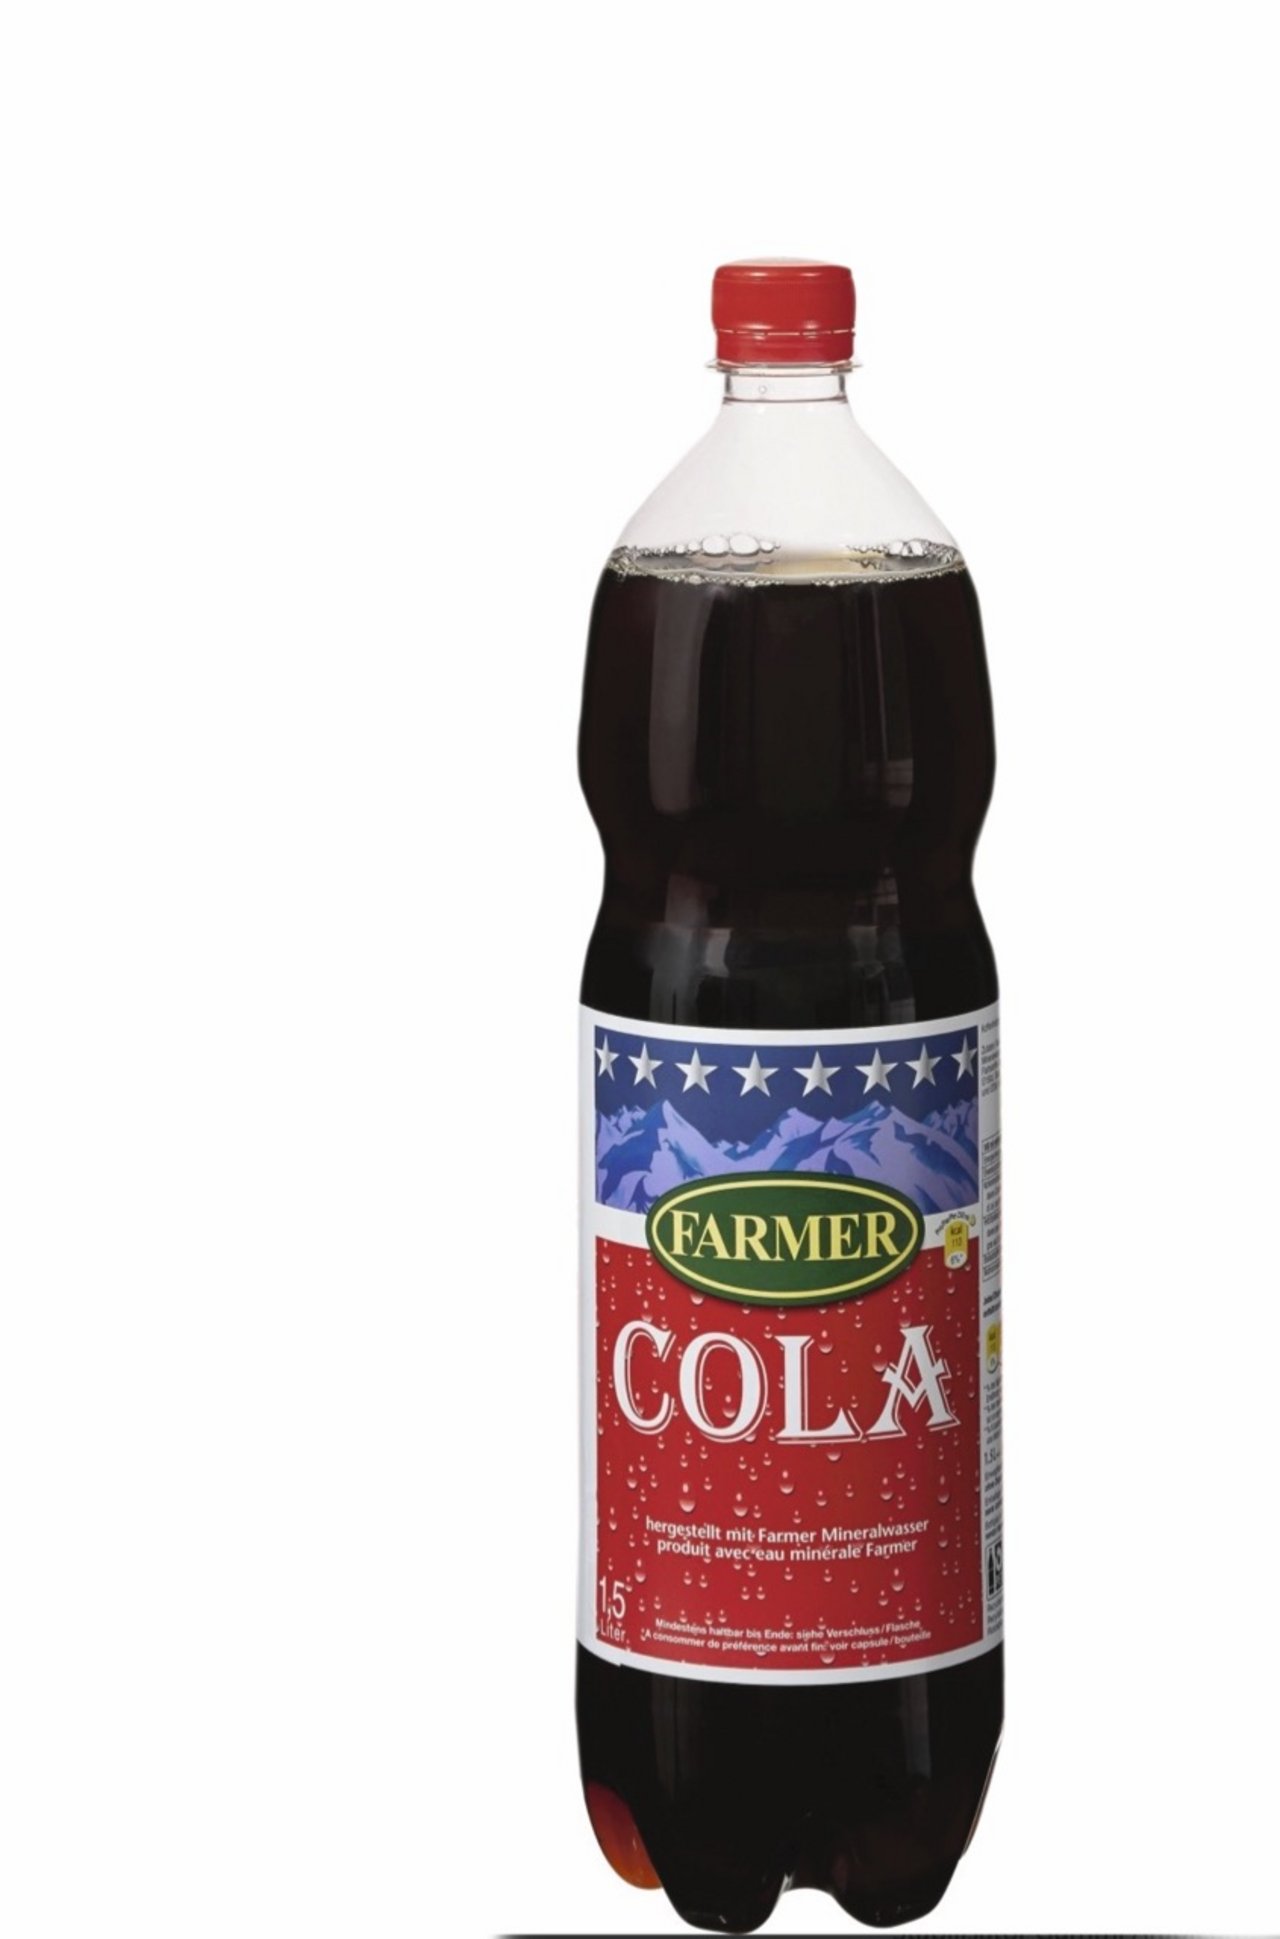 Cola ist sehr sauer, was die Vermehrung von Coli-Bakterien wirksam eindämmt. Bild: zVg